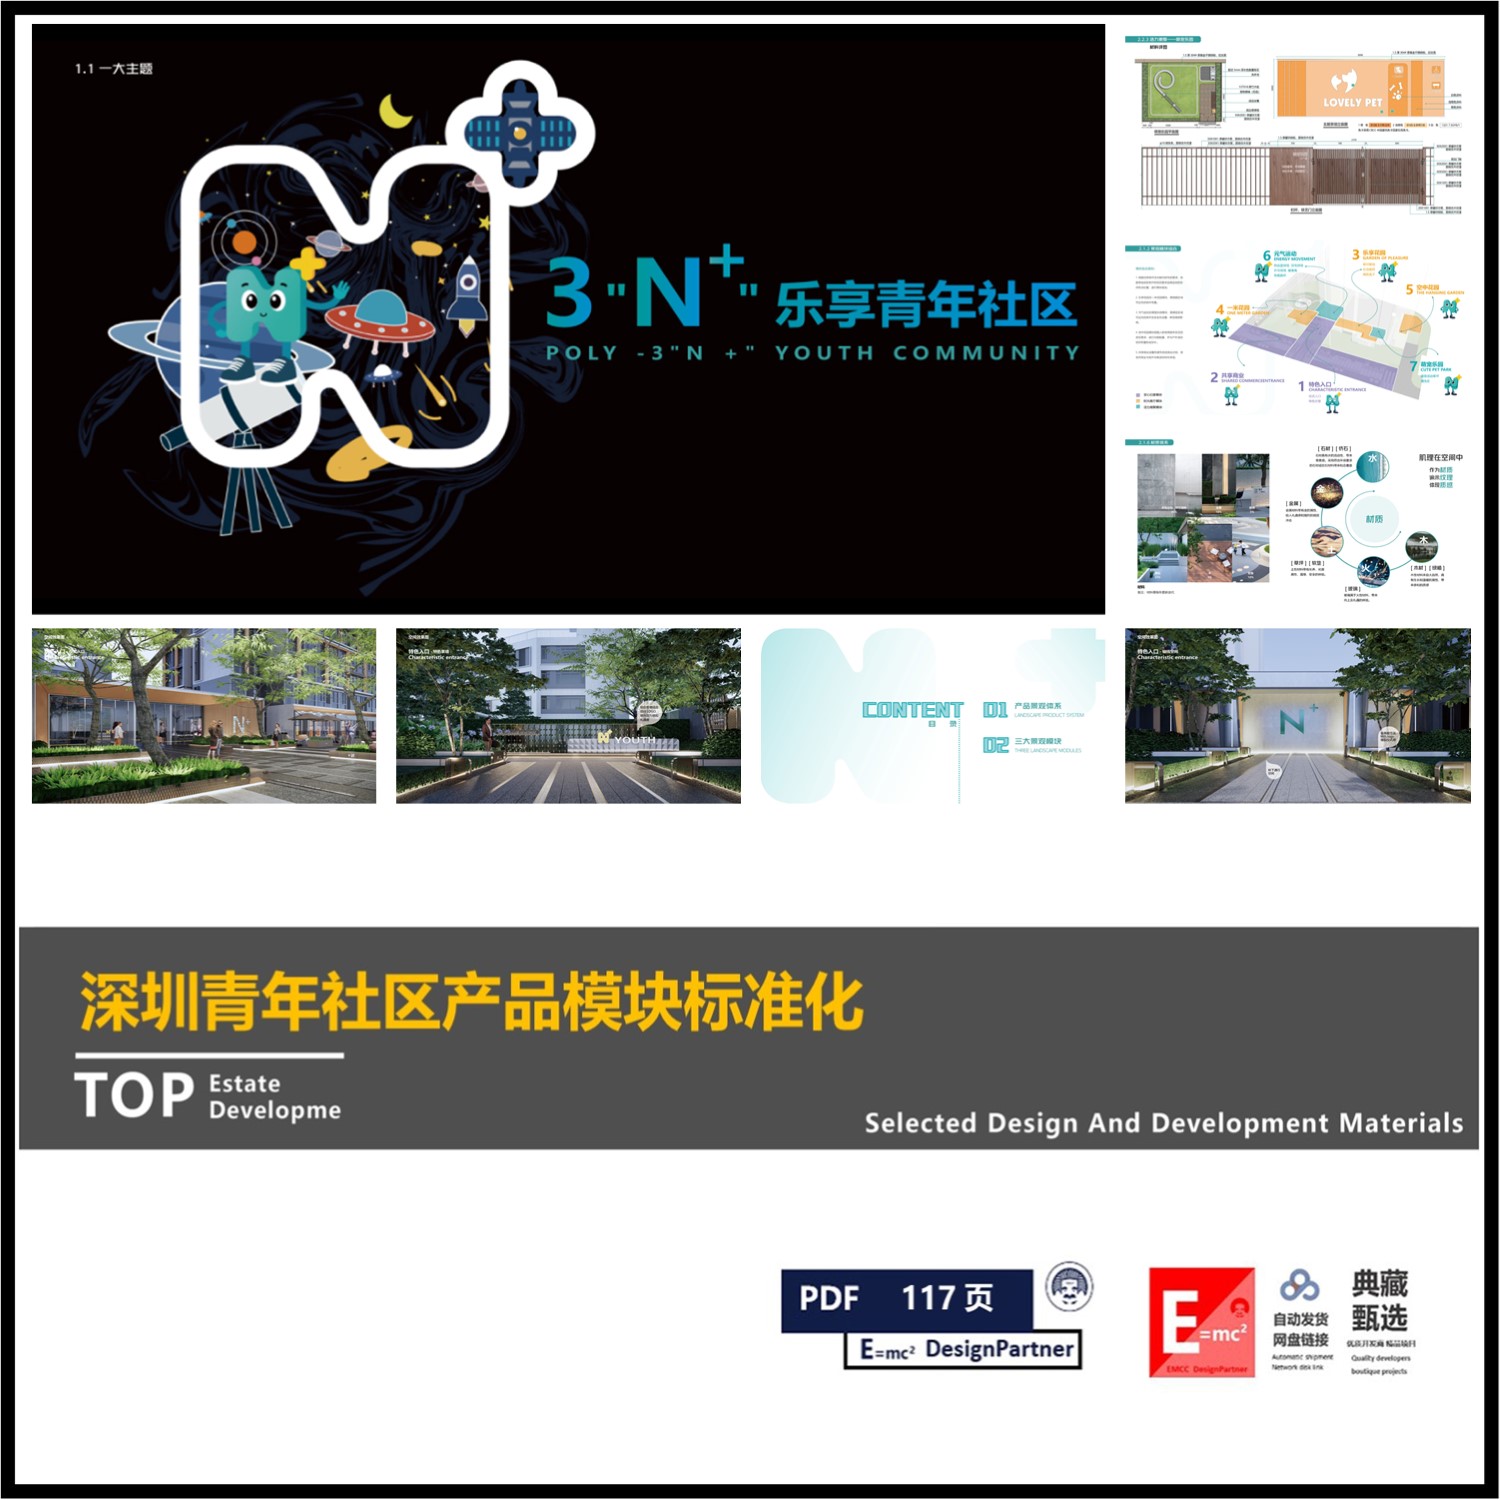 保利发展深圳新青年社区公寓型产品多维景观模块标准化指导准则